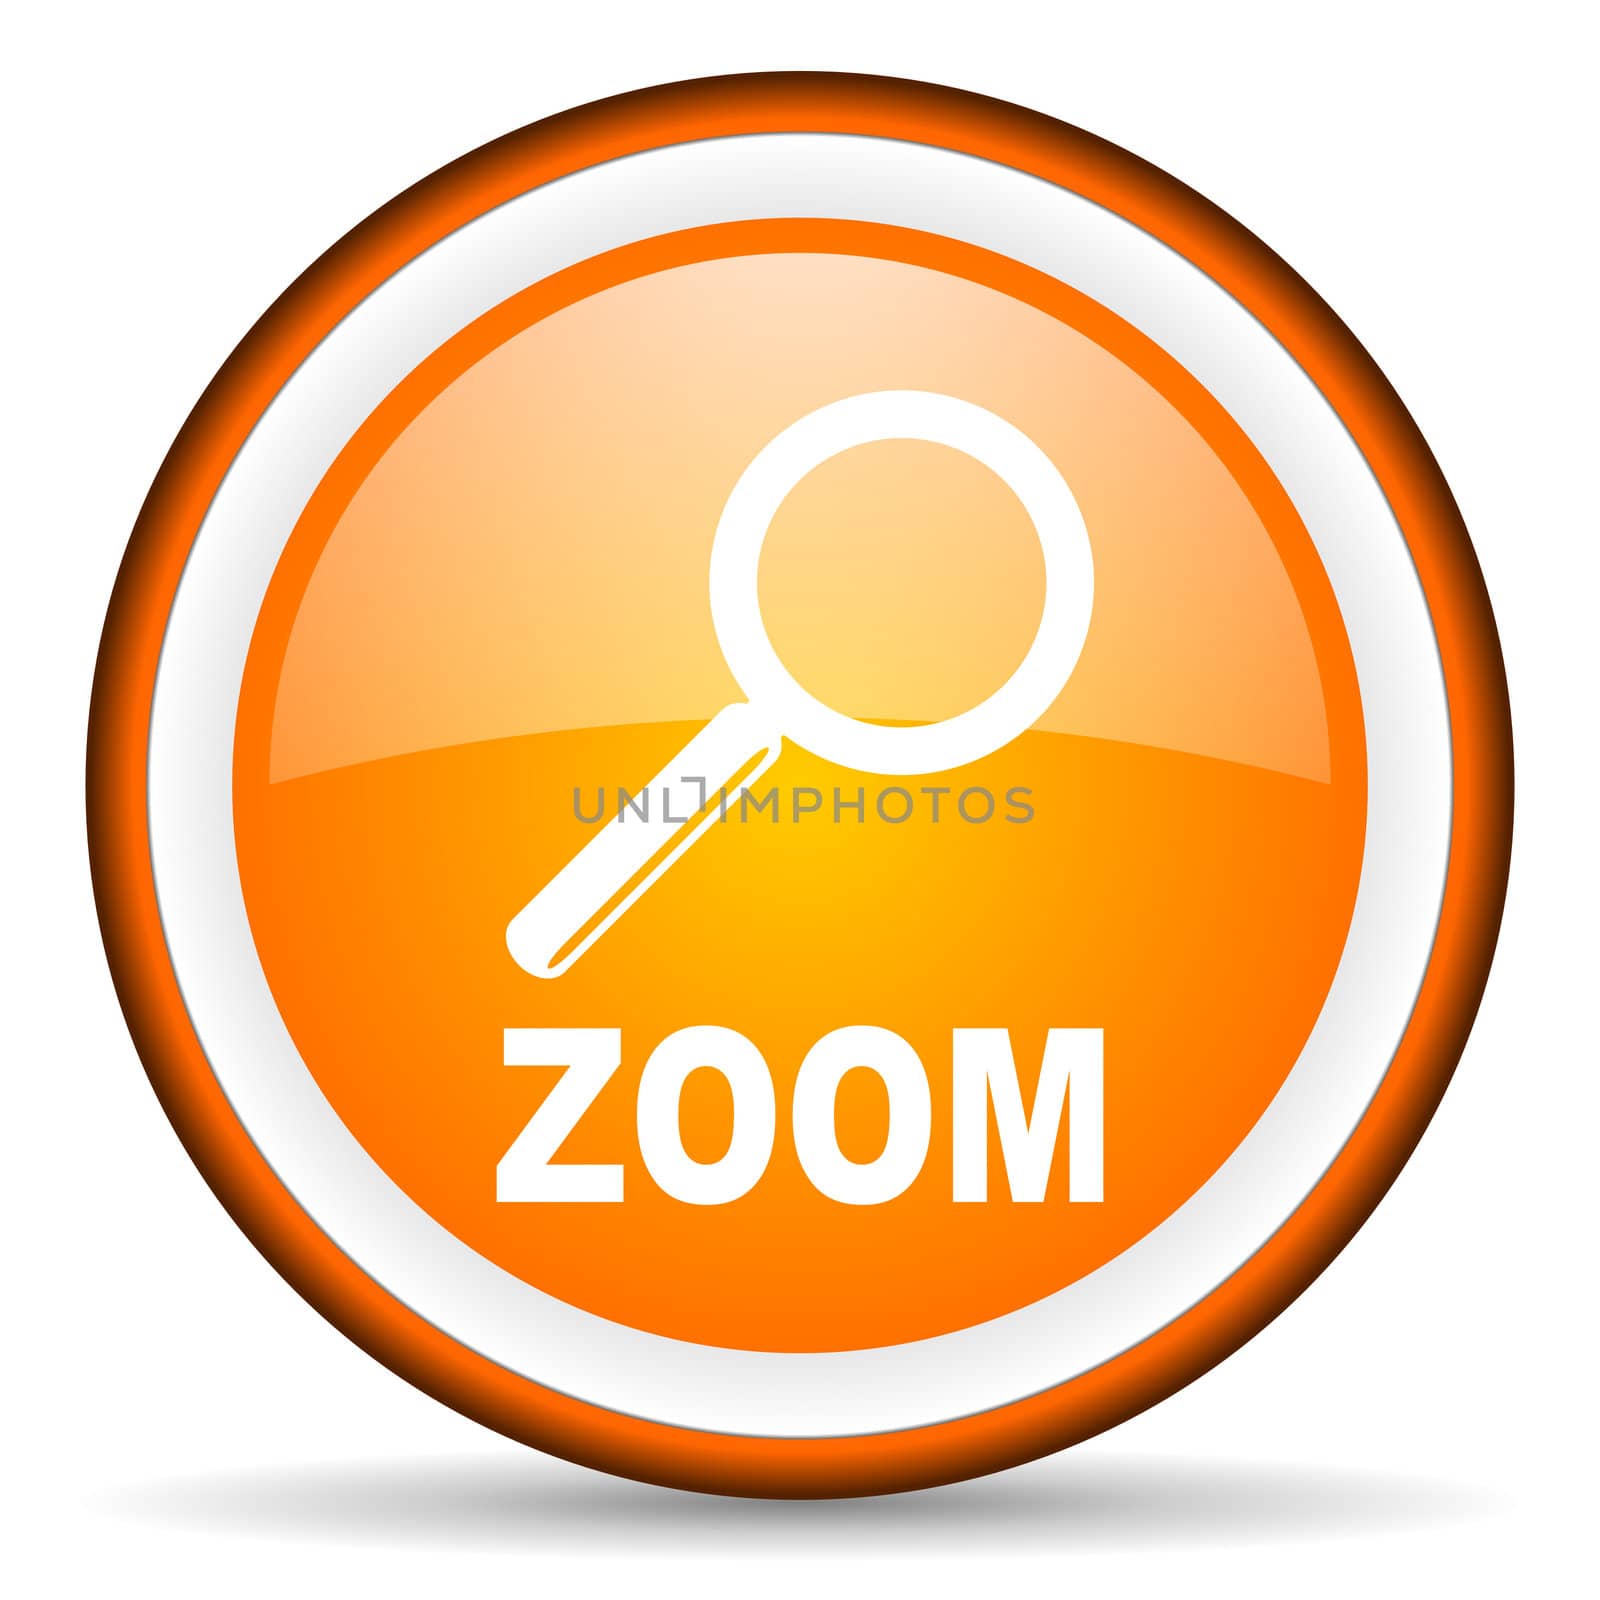 zoom orange glossy circle icon on white background